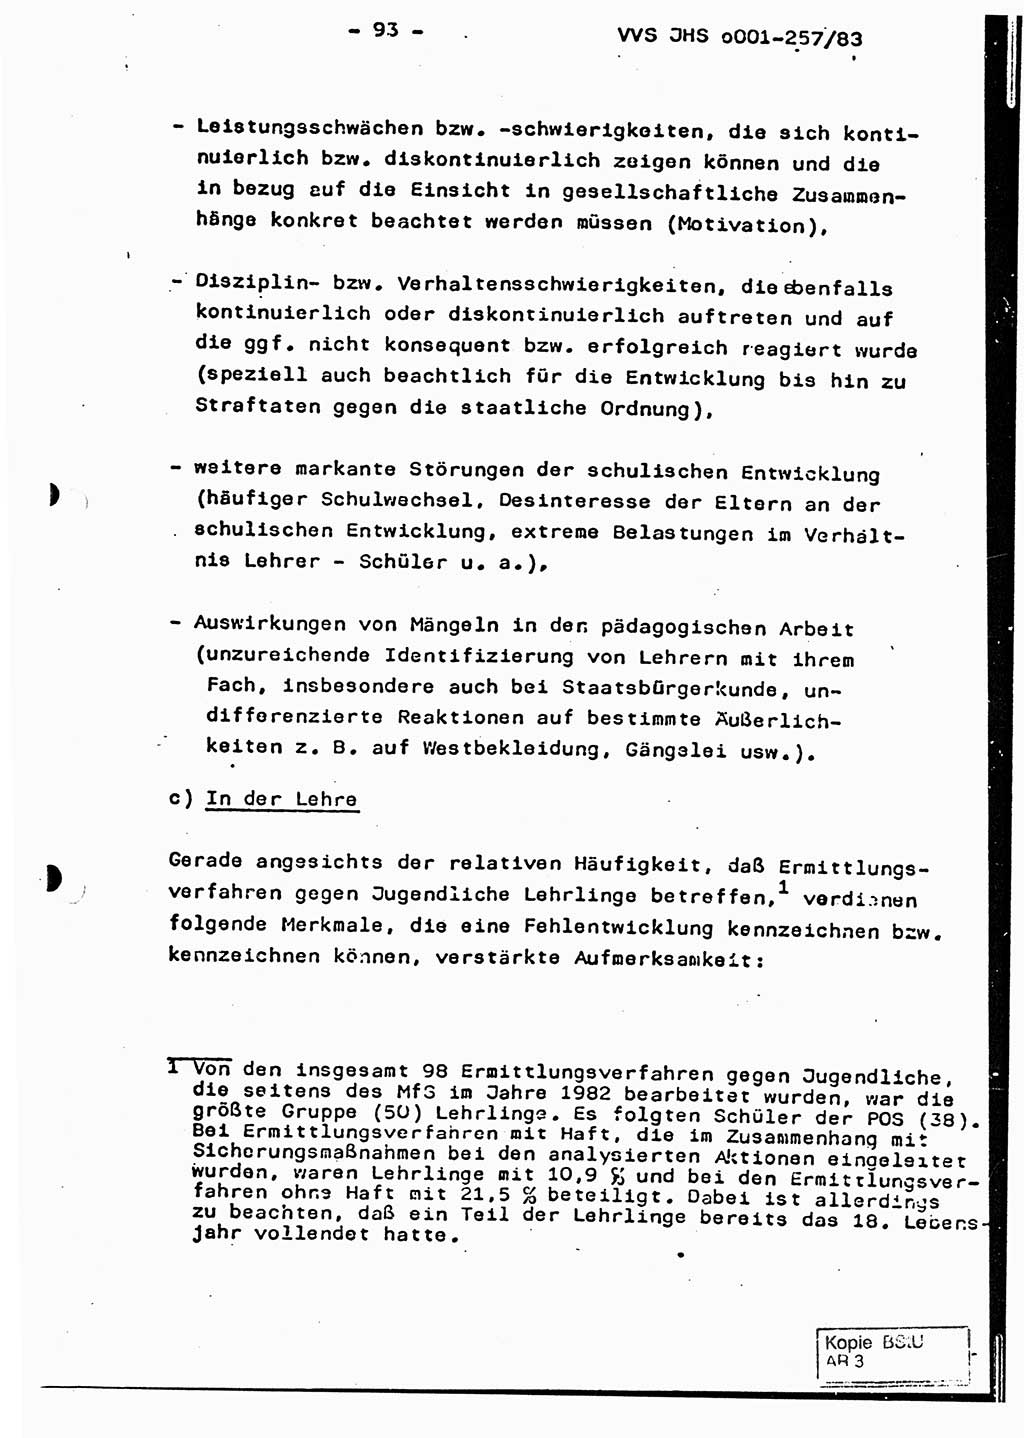 Dissertation, Oberst Helmut Lubas (BV Mdg.), Oberstleutnant Manfred Eschberger (HA IX), Oberleutnant Hans-Jürgen Ludwig (JHS), Ministerium für Staatssicherheit (MfS) [Deutsche Demokratische Republik (DDR)], Juristische Hochschule (JHS), Vertrauliche Verschlußsache (VVS) o001-257/83, Potsdam 1983, Seite 93 (Diss. MfS DDR JHS VVS o001-257/83 1983, S. 93)